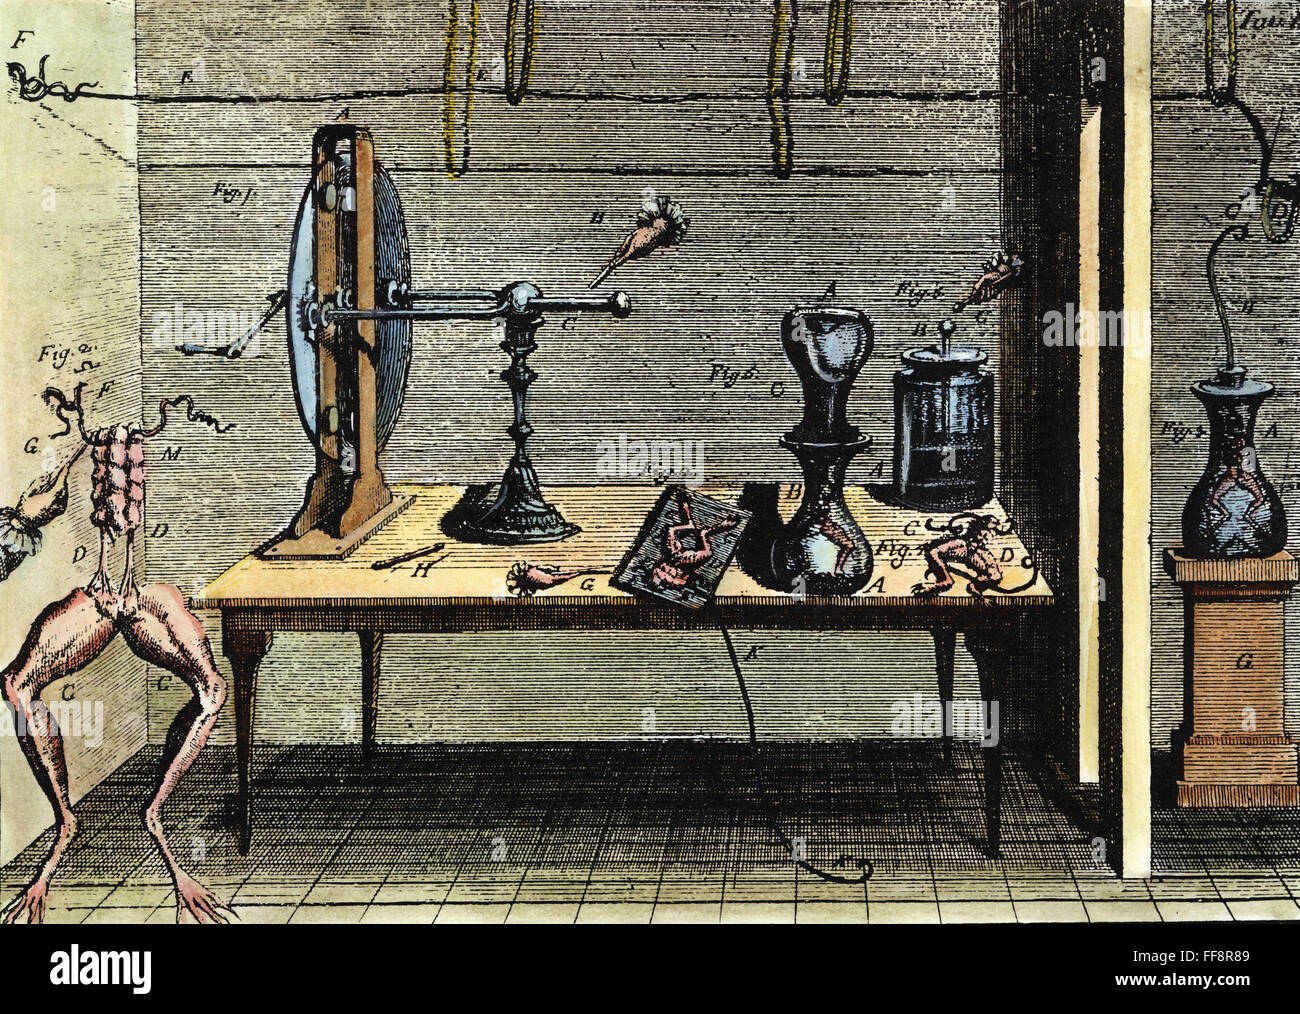 GALVANISM, 1791. /NLuigi Galvani la produzione di una corrente elettrica tra due metalli e una rana per le gambe, la dimostrazione grafica di galvanism. Incisione da Galvani's "De viribus electricitatis", 1791. Foto Stock